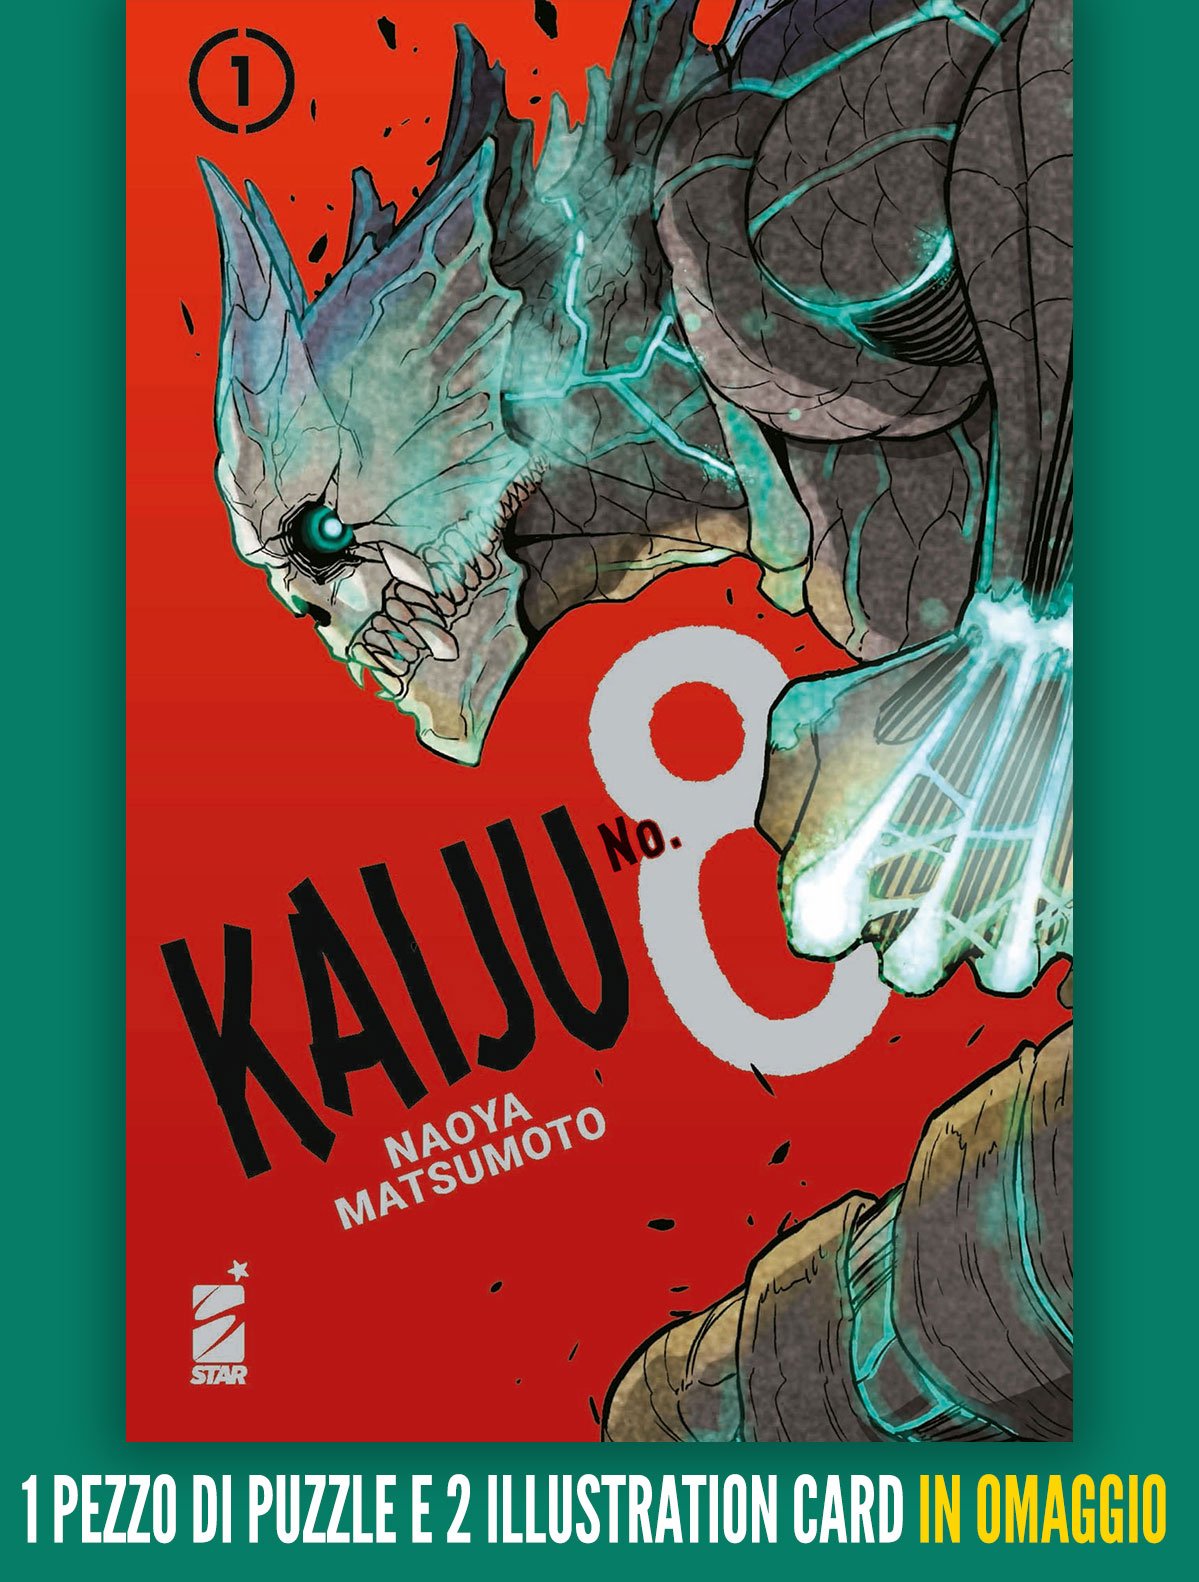 KAIJU No. 8 1 con puzzle e illustration card, tra le novità Star Comics di Marzo 2022